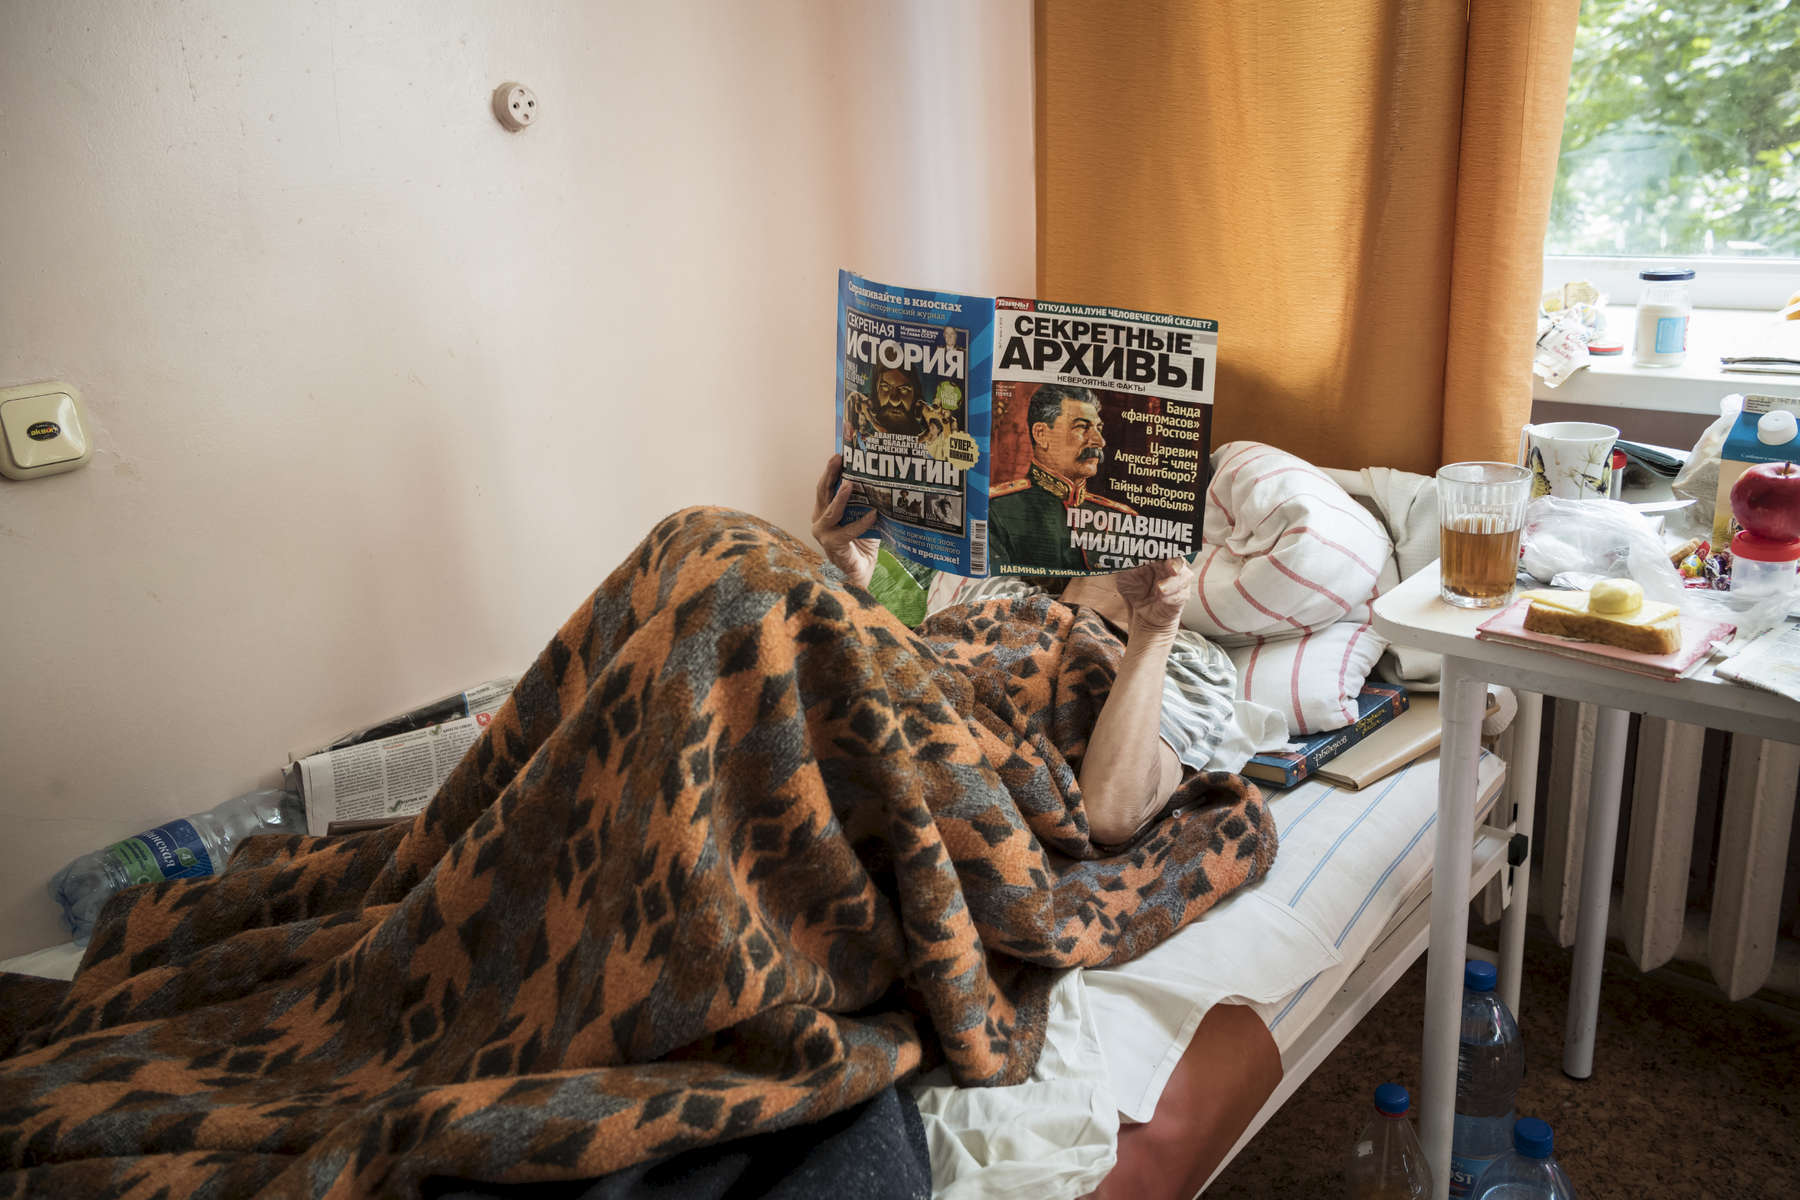 Ludmila a 59 ans, elle est veuve originaire de Minsk. Elle est à l’institut dans des conditions très sévères, elle a le sida et la tuberculose. Elle travaillait comme assitante dans un magazin puis elle a fait la plonge dans des restaurants. Elle ne sait pas comment elle a été contaminée par la Tb. Institut Républicain de la Tb, Minsk, Bielorussie, 2018